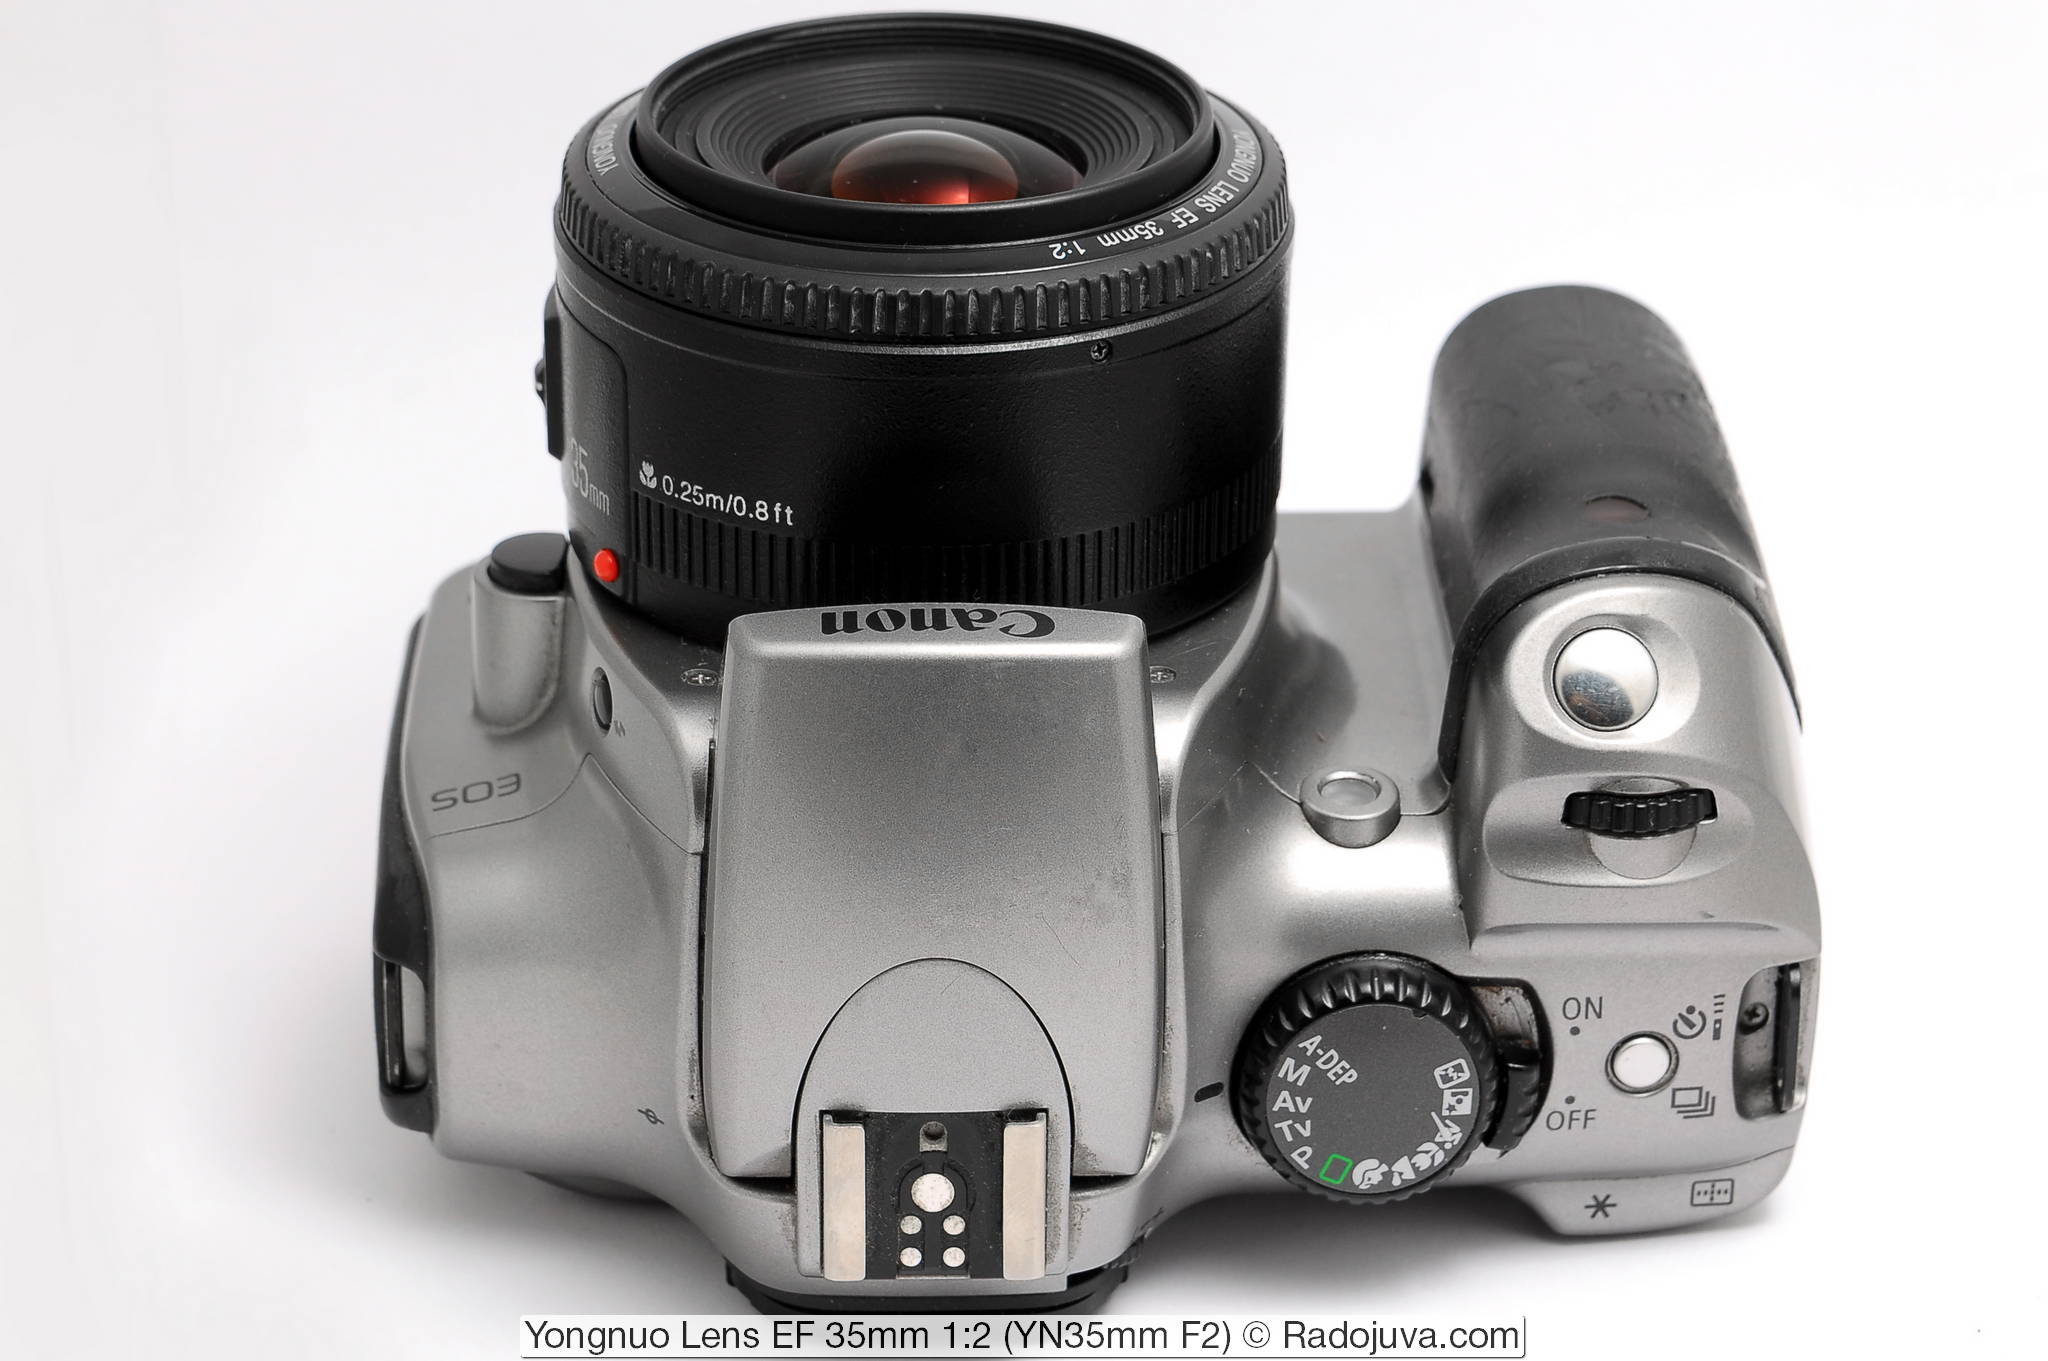 Yongnuo Lens EF 35mm 1:2 (YN35mm F2)